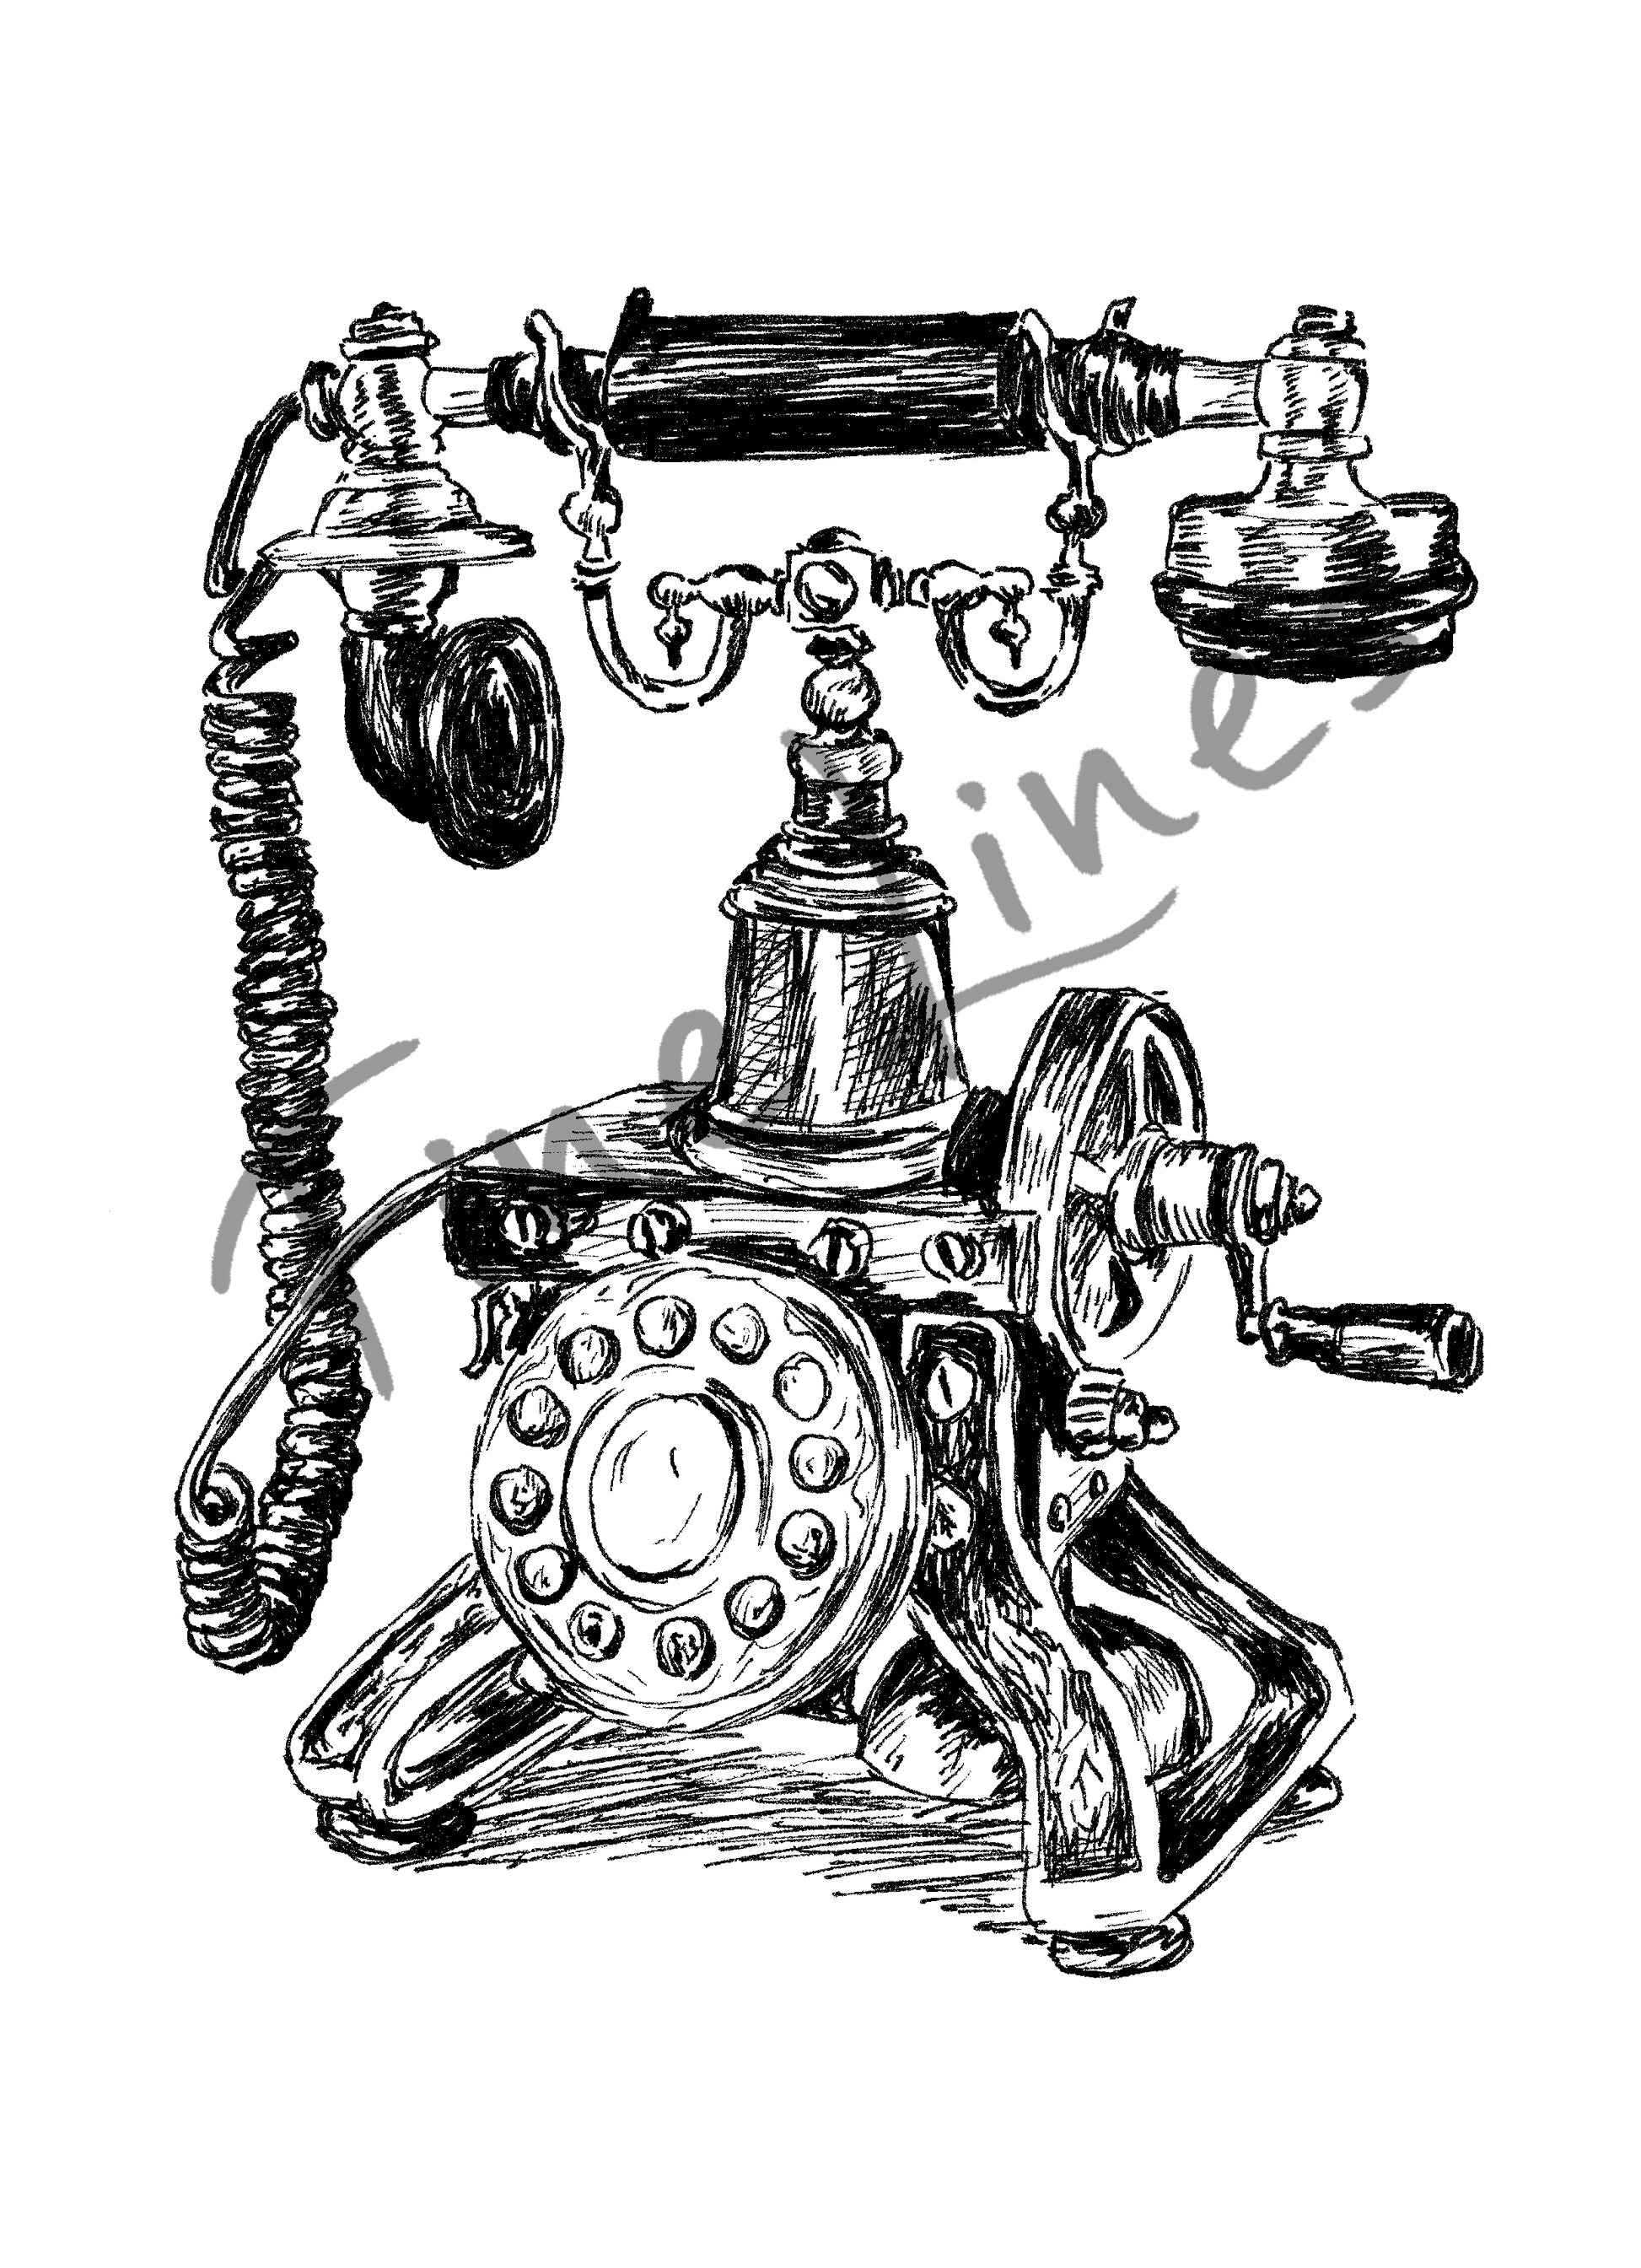 תמונה להדפסה ומיסגור טלפון עתיק - rachelsfinelines